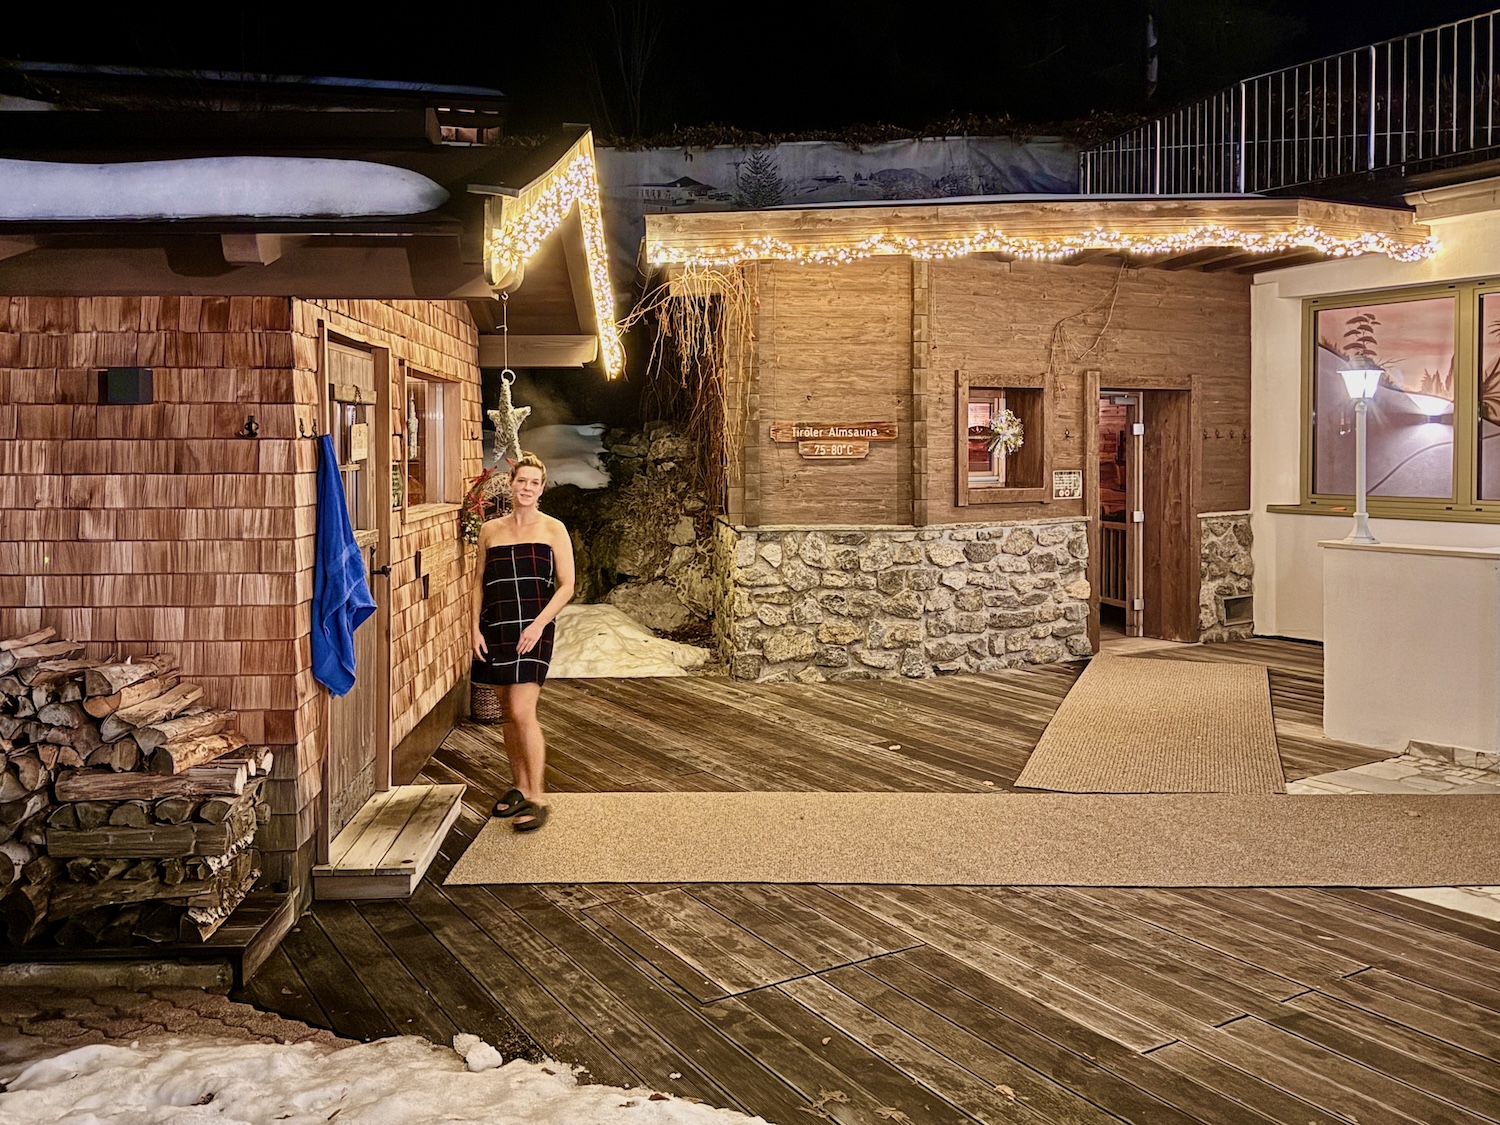 Nous avons été impressionnés par le petit village de saunas d'Aubad. C'est un endroit idéal pour tous ceux qui souhaitent vraiment se détendre après une journée sur les pistes. Photo: Sascha Tegtmeyer vacances au ski à Fieberbrunn vacances d'hiver rapport de voyage expérience rapport d'expériences